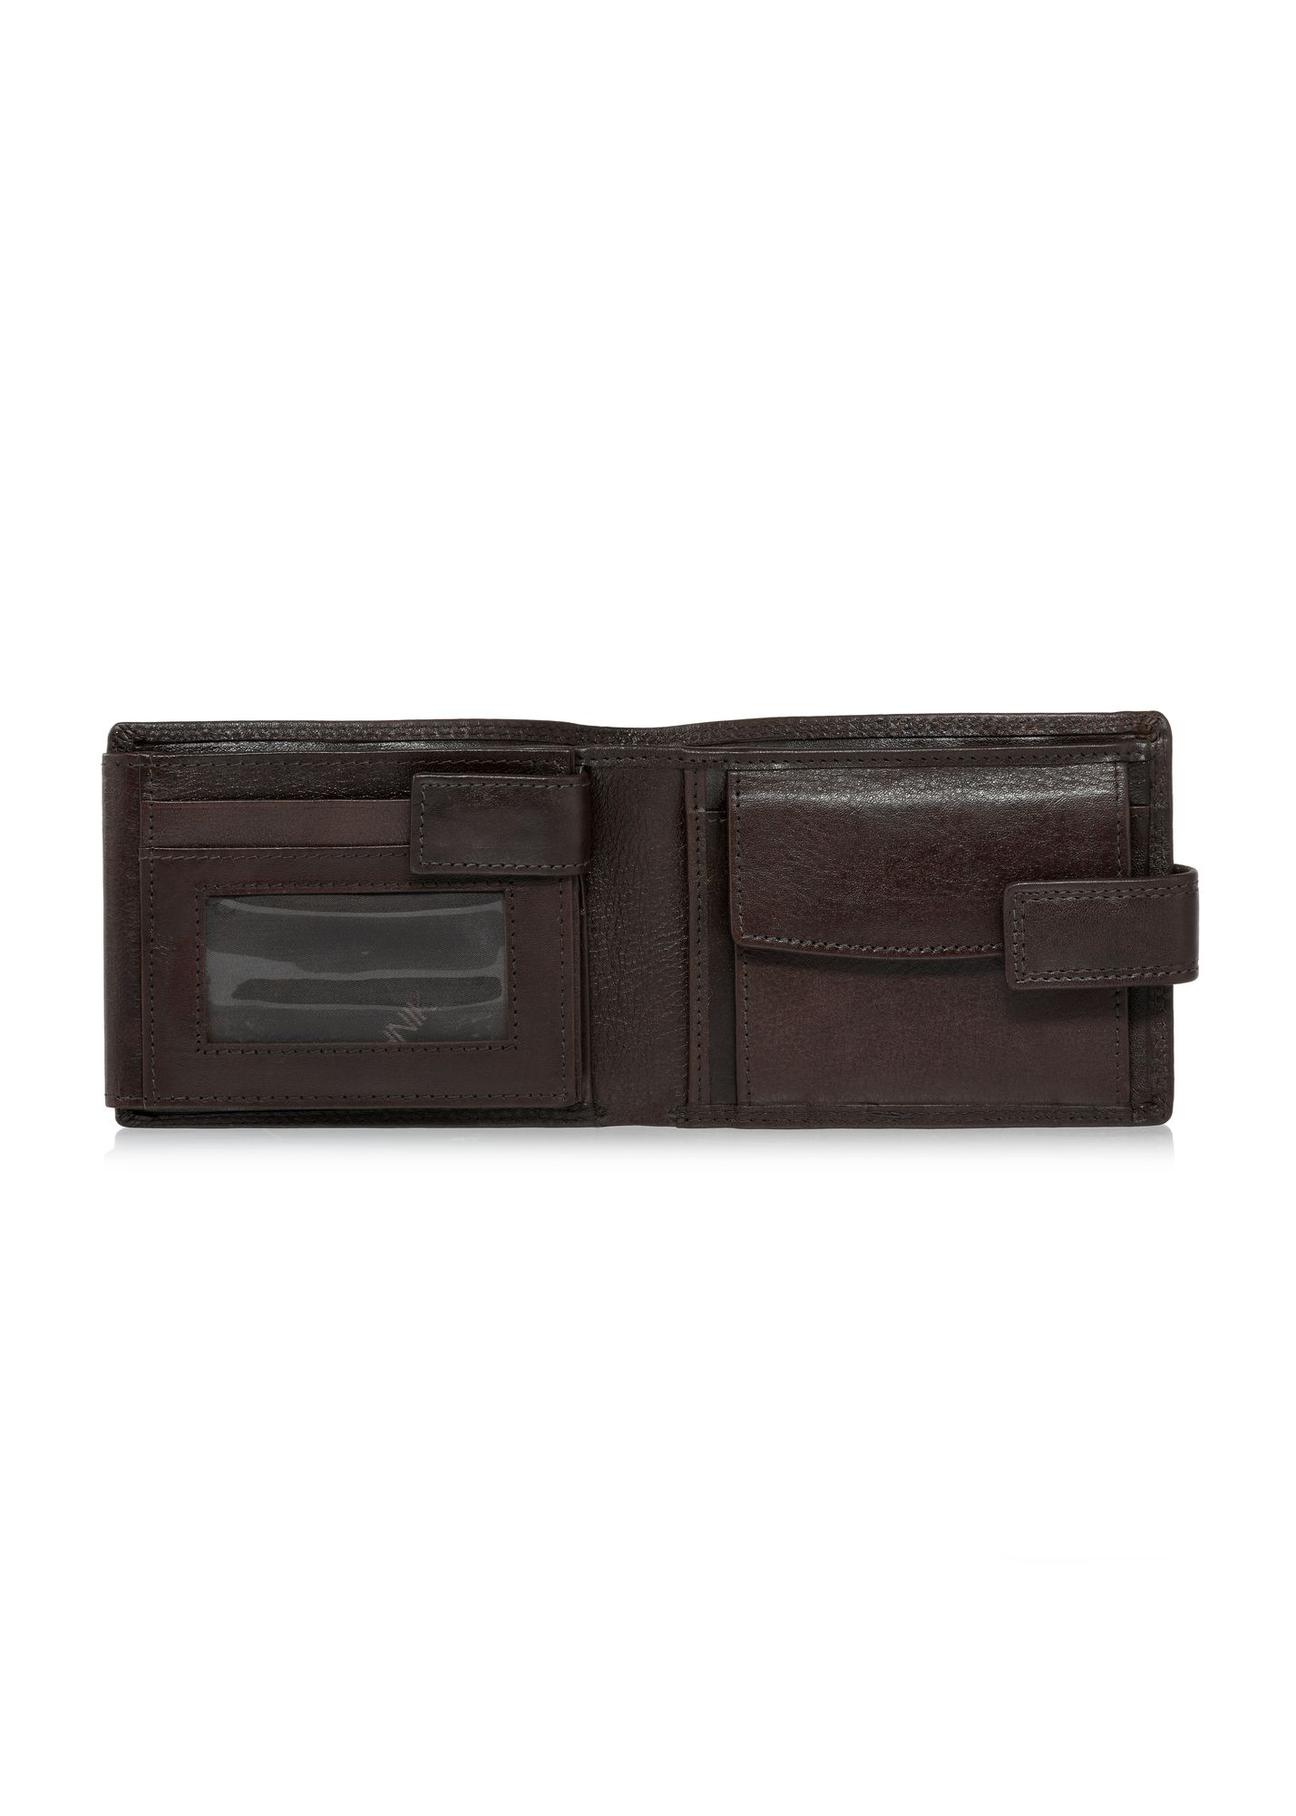 Skórzany zapinany brązowy portfel męski PORMS-0606-89(W24)